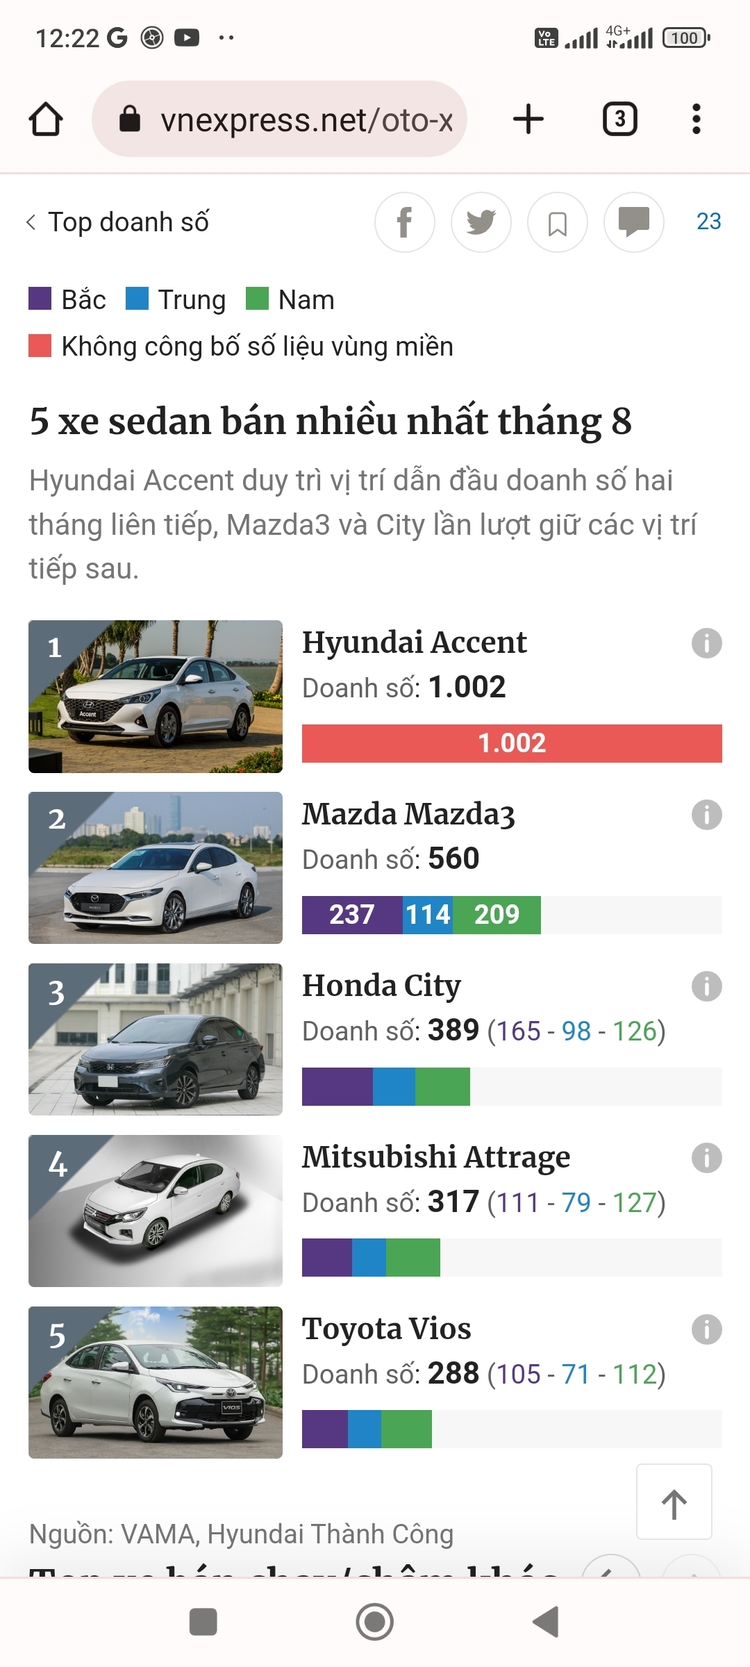 Tháng ngâu, doanh số xe Hyundai giảm gần 1.000 xe